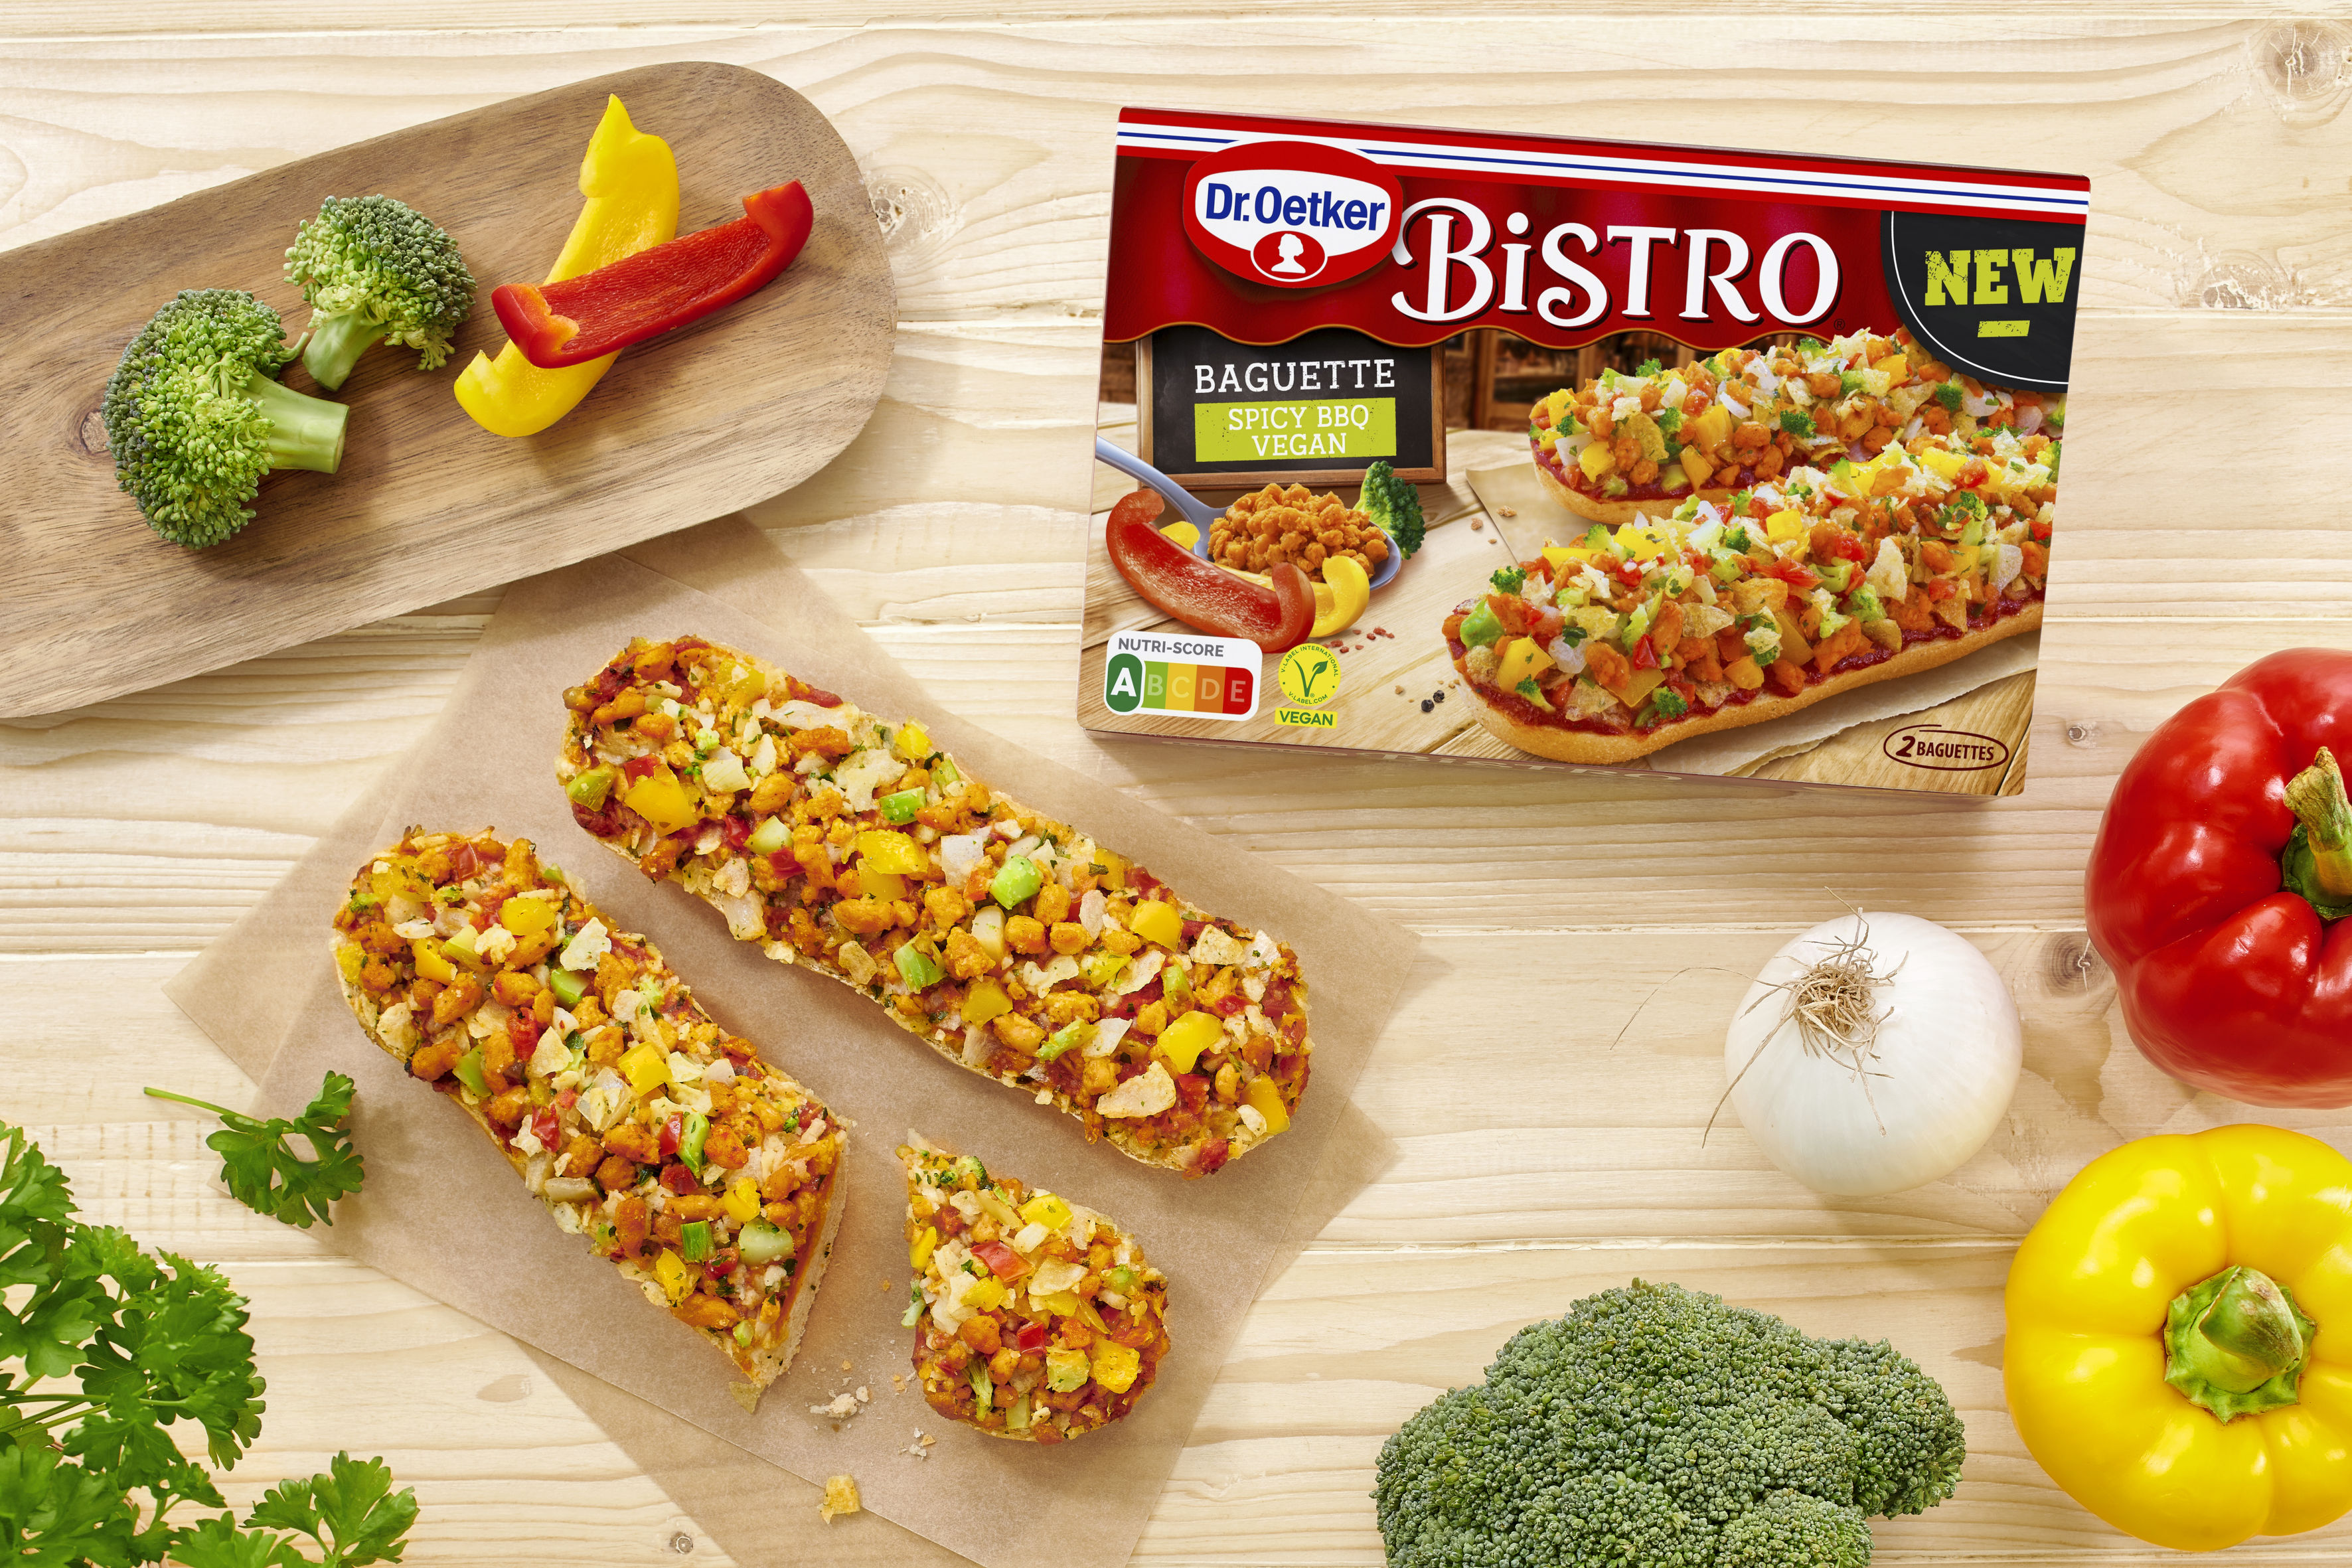 Bistro Baguette Spicy BBQ Vegan Oetker | Presse-Information Dr